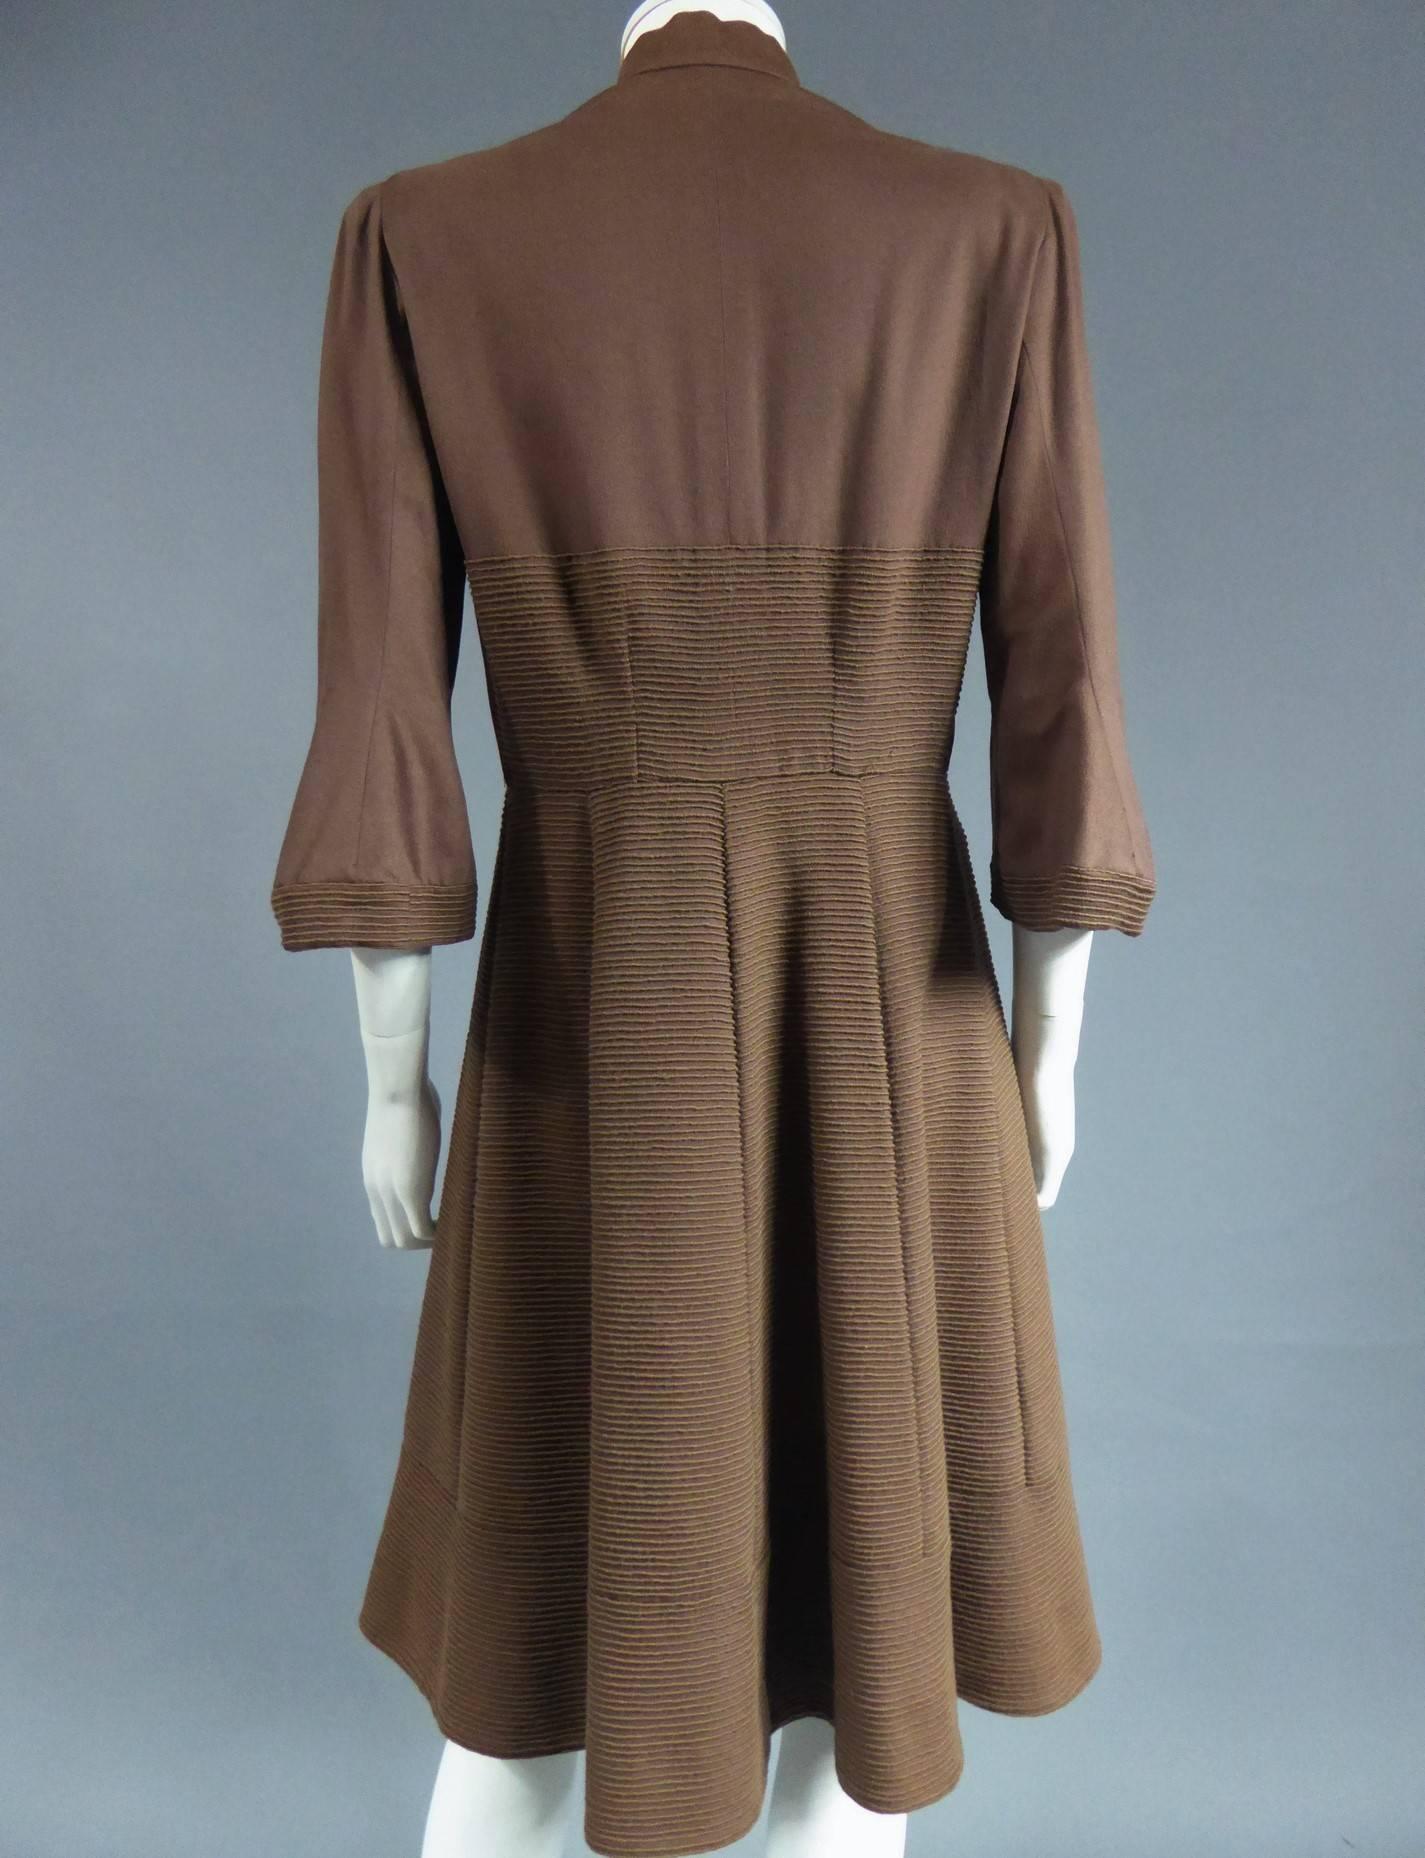 1947 dresses